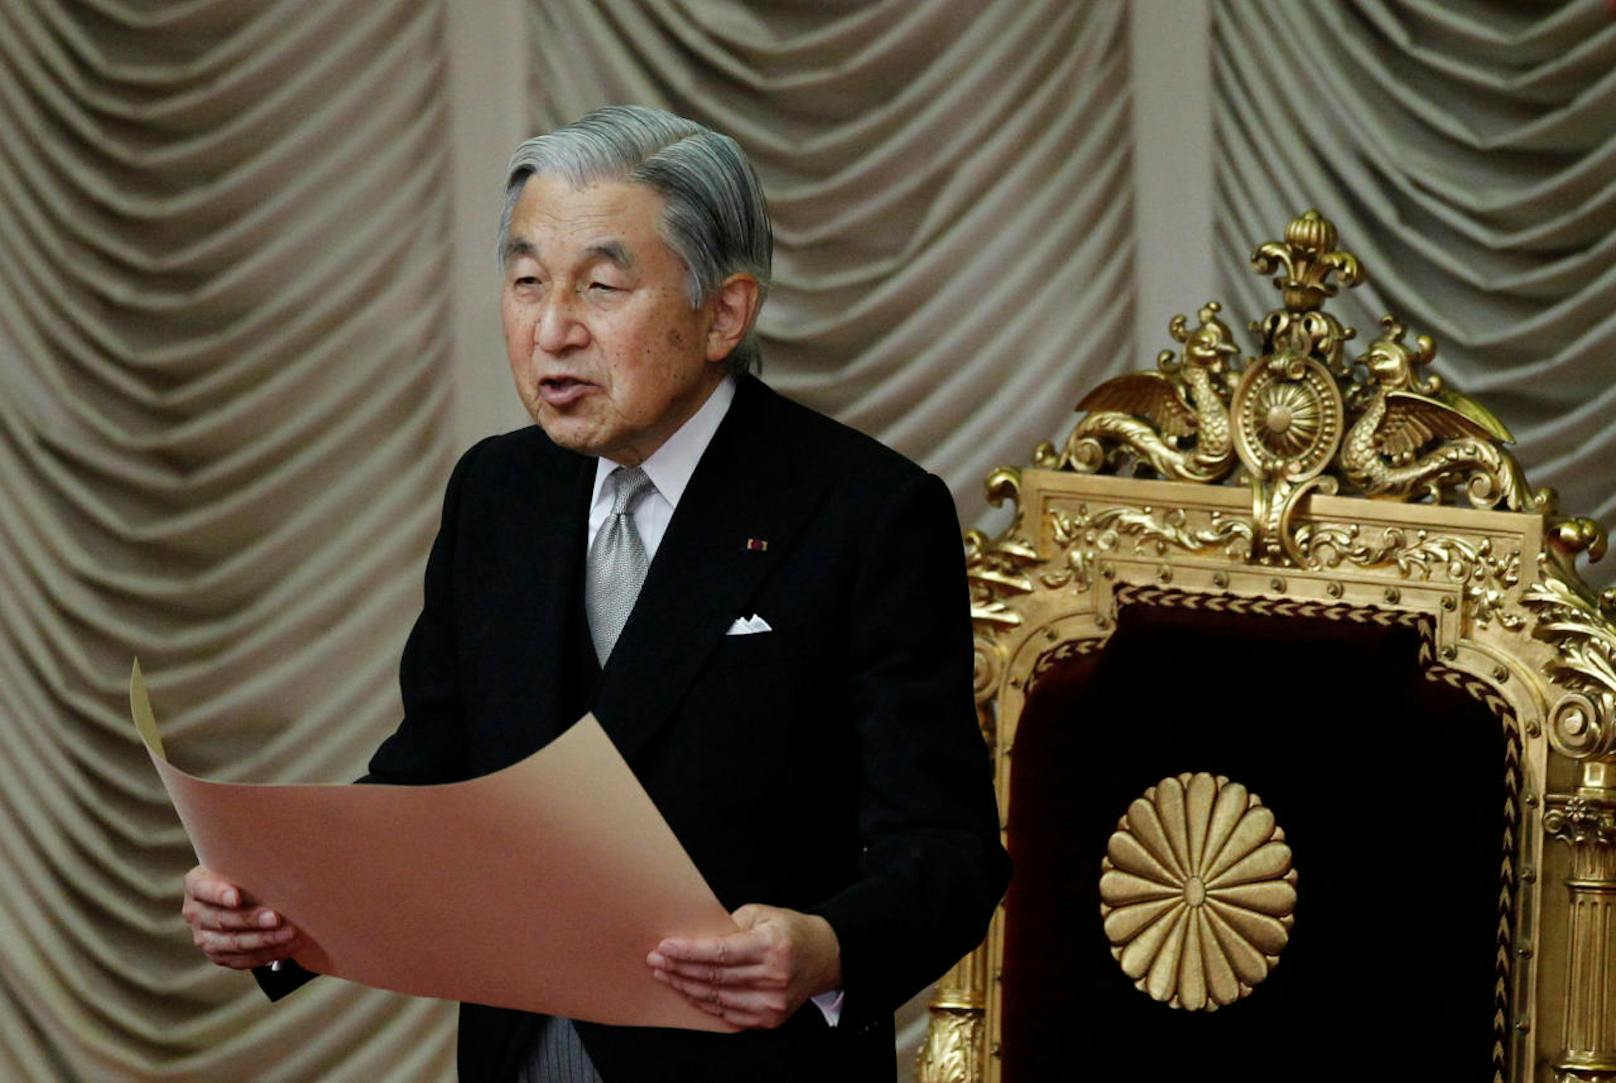 Im Gegensatz zu seinen Vorgängern ist Akihito der erste Tenno, der offiziell nicht mehr den gottähnlichen Status eines himmlischen Herrschers und Nachfahren der Sonnengöttin Amaterasu innehat. Er gilt laut Verfassung als einendes Staatssymbol Japans, jedoch nicht als Staatsoberhaupt.